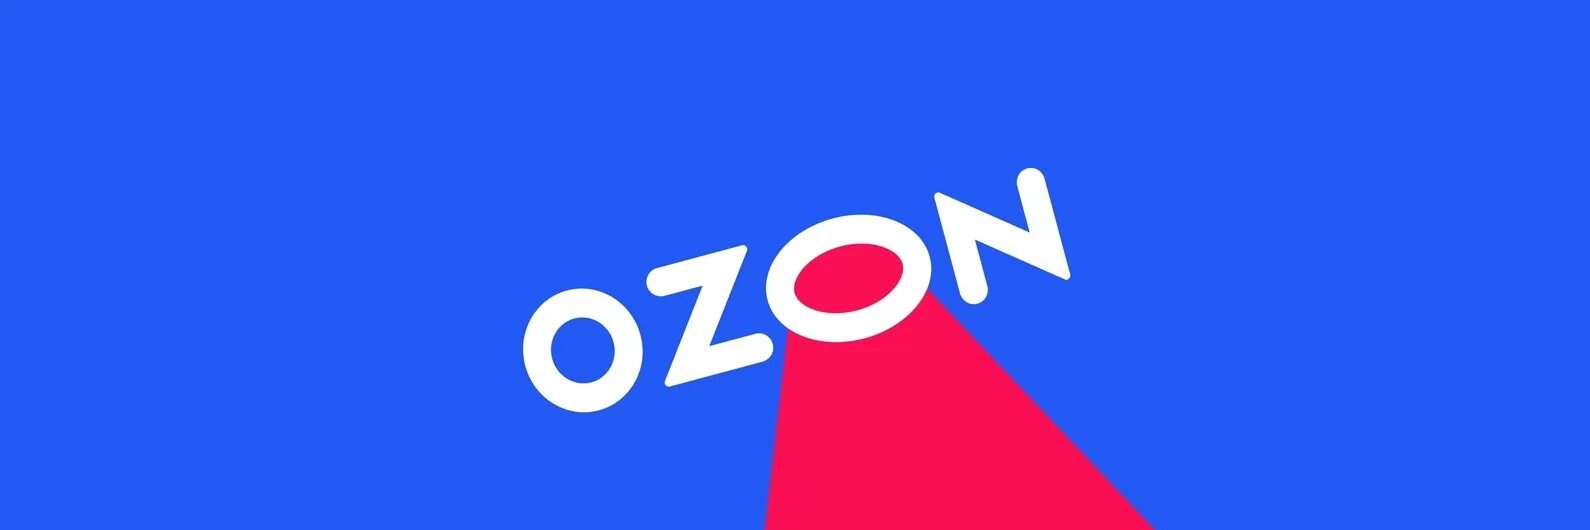 Синий озон. OZON логотип. Oz логотип. Озон новый логотип. OZON логотип 2021.